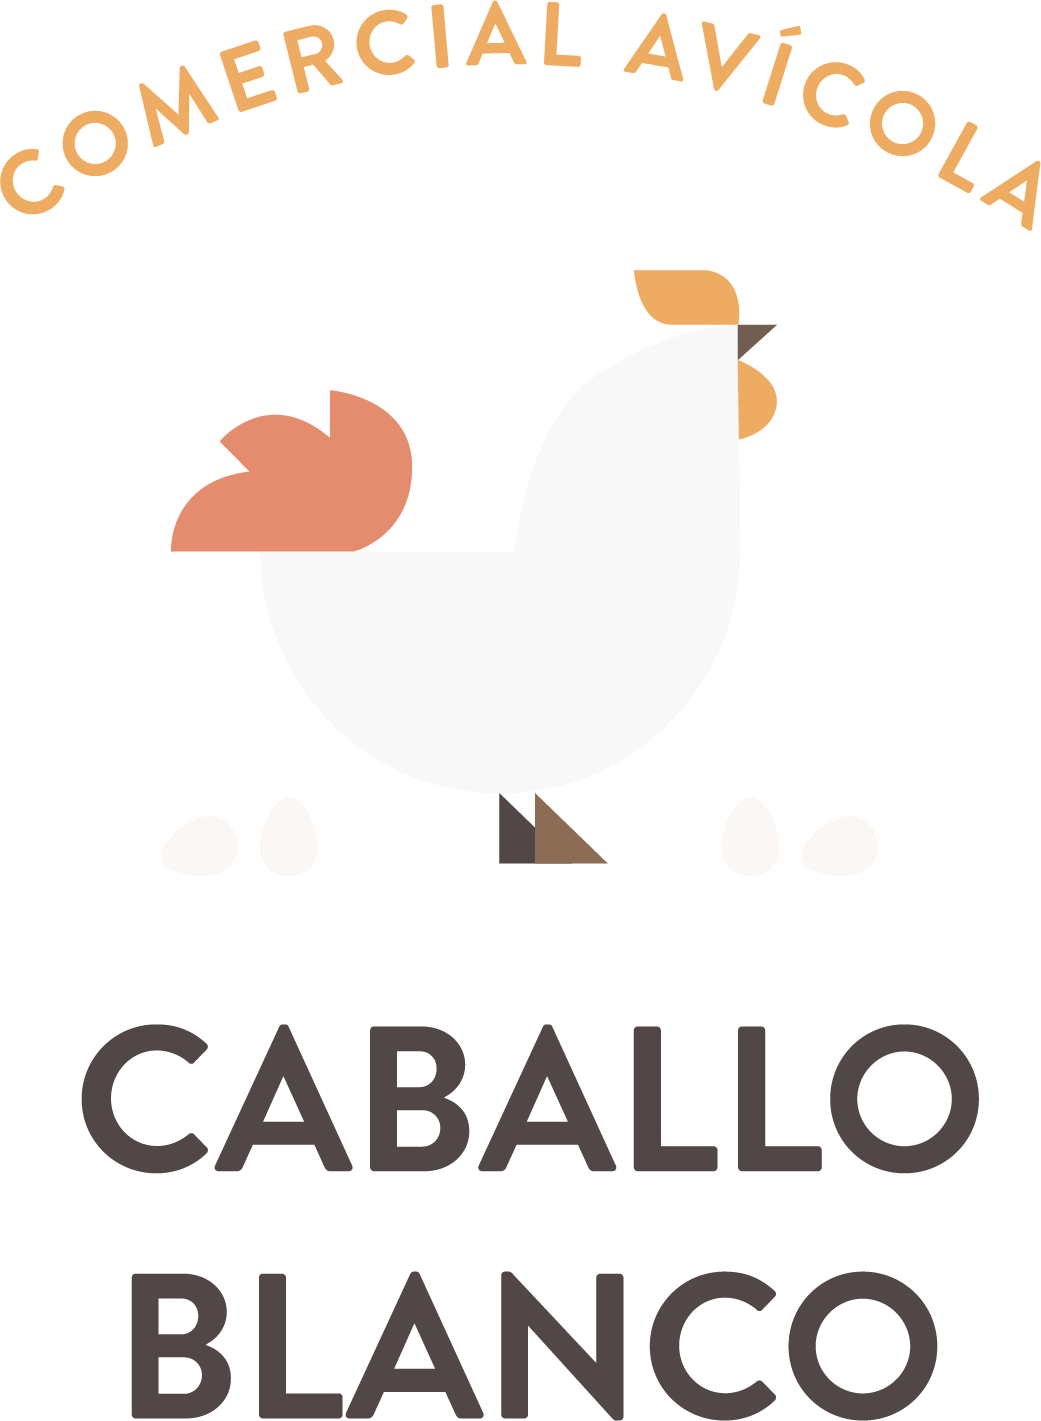 Caballo Blanco Gourmet